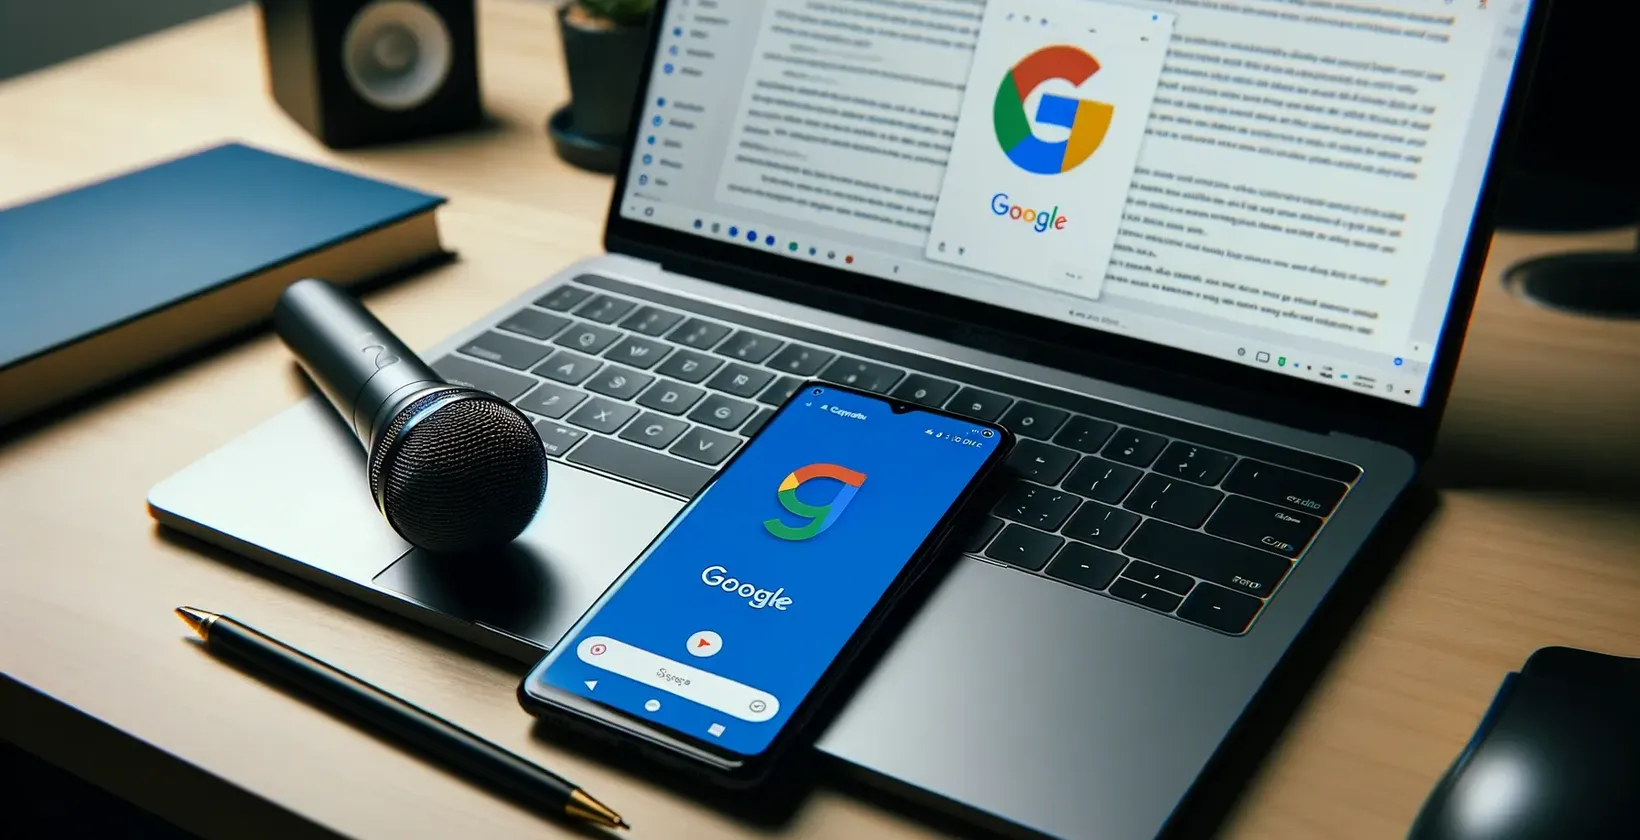 Google сфокусований робочий простір з ноутбуком, що показує документ, смартфоном з логотипом, мікрофоном на тачпаді та блокнотом-ручкою.